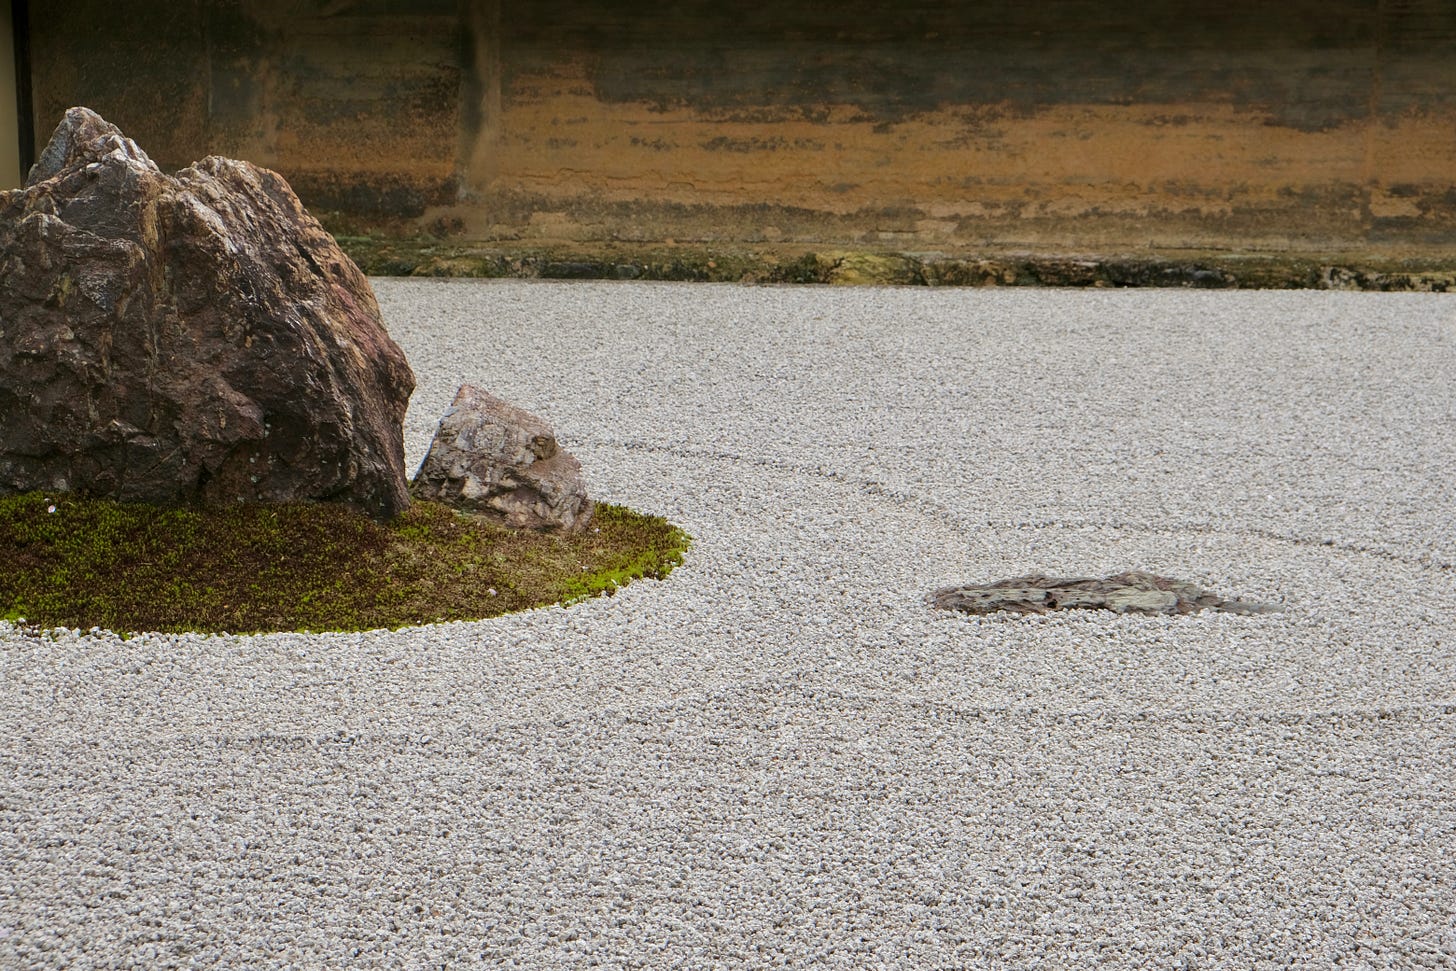 A raked Japanese garden. Photo by Ben Dark